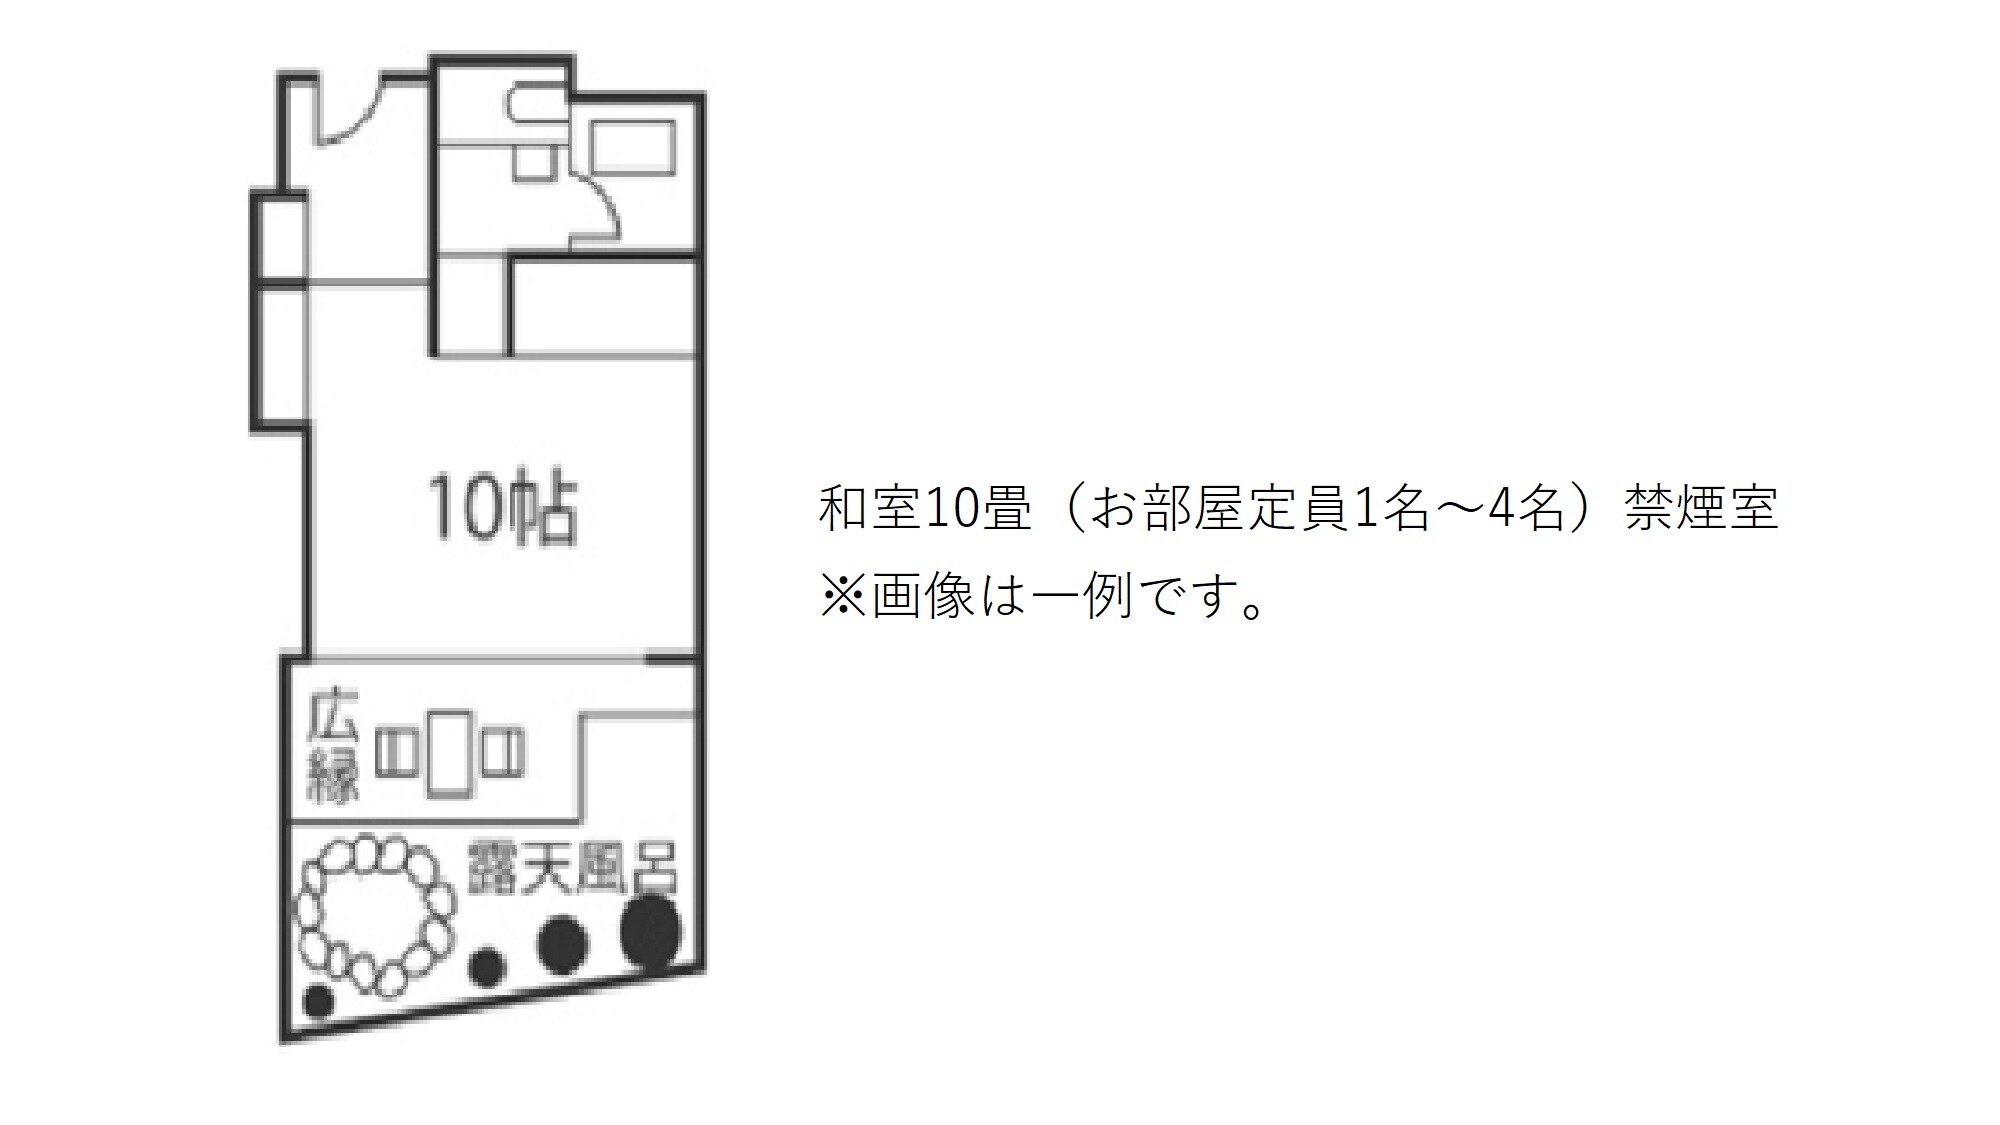 日式房间 10张榻榻米（房间可容纳 1 至 4 人） 无烟房